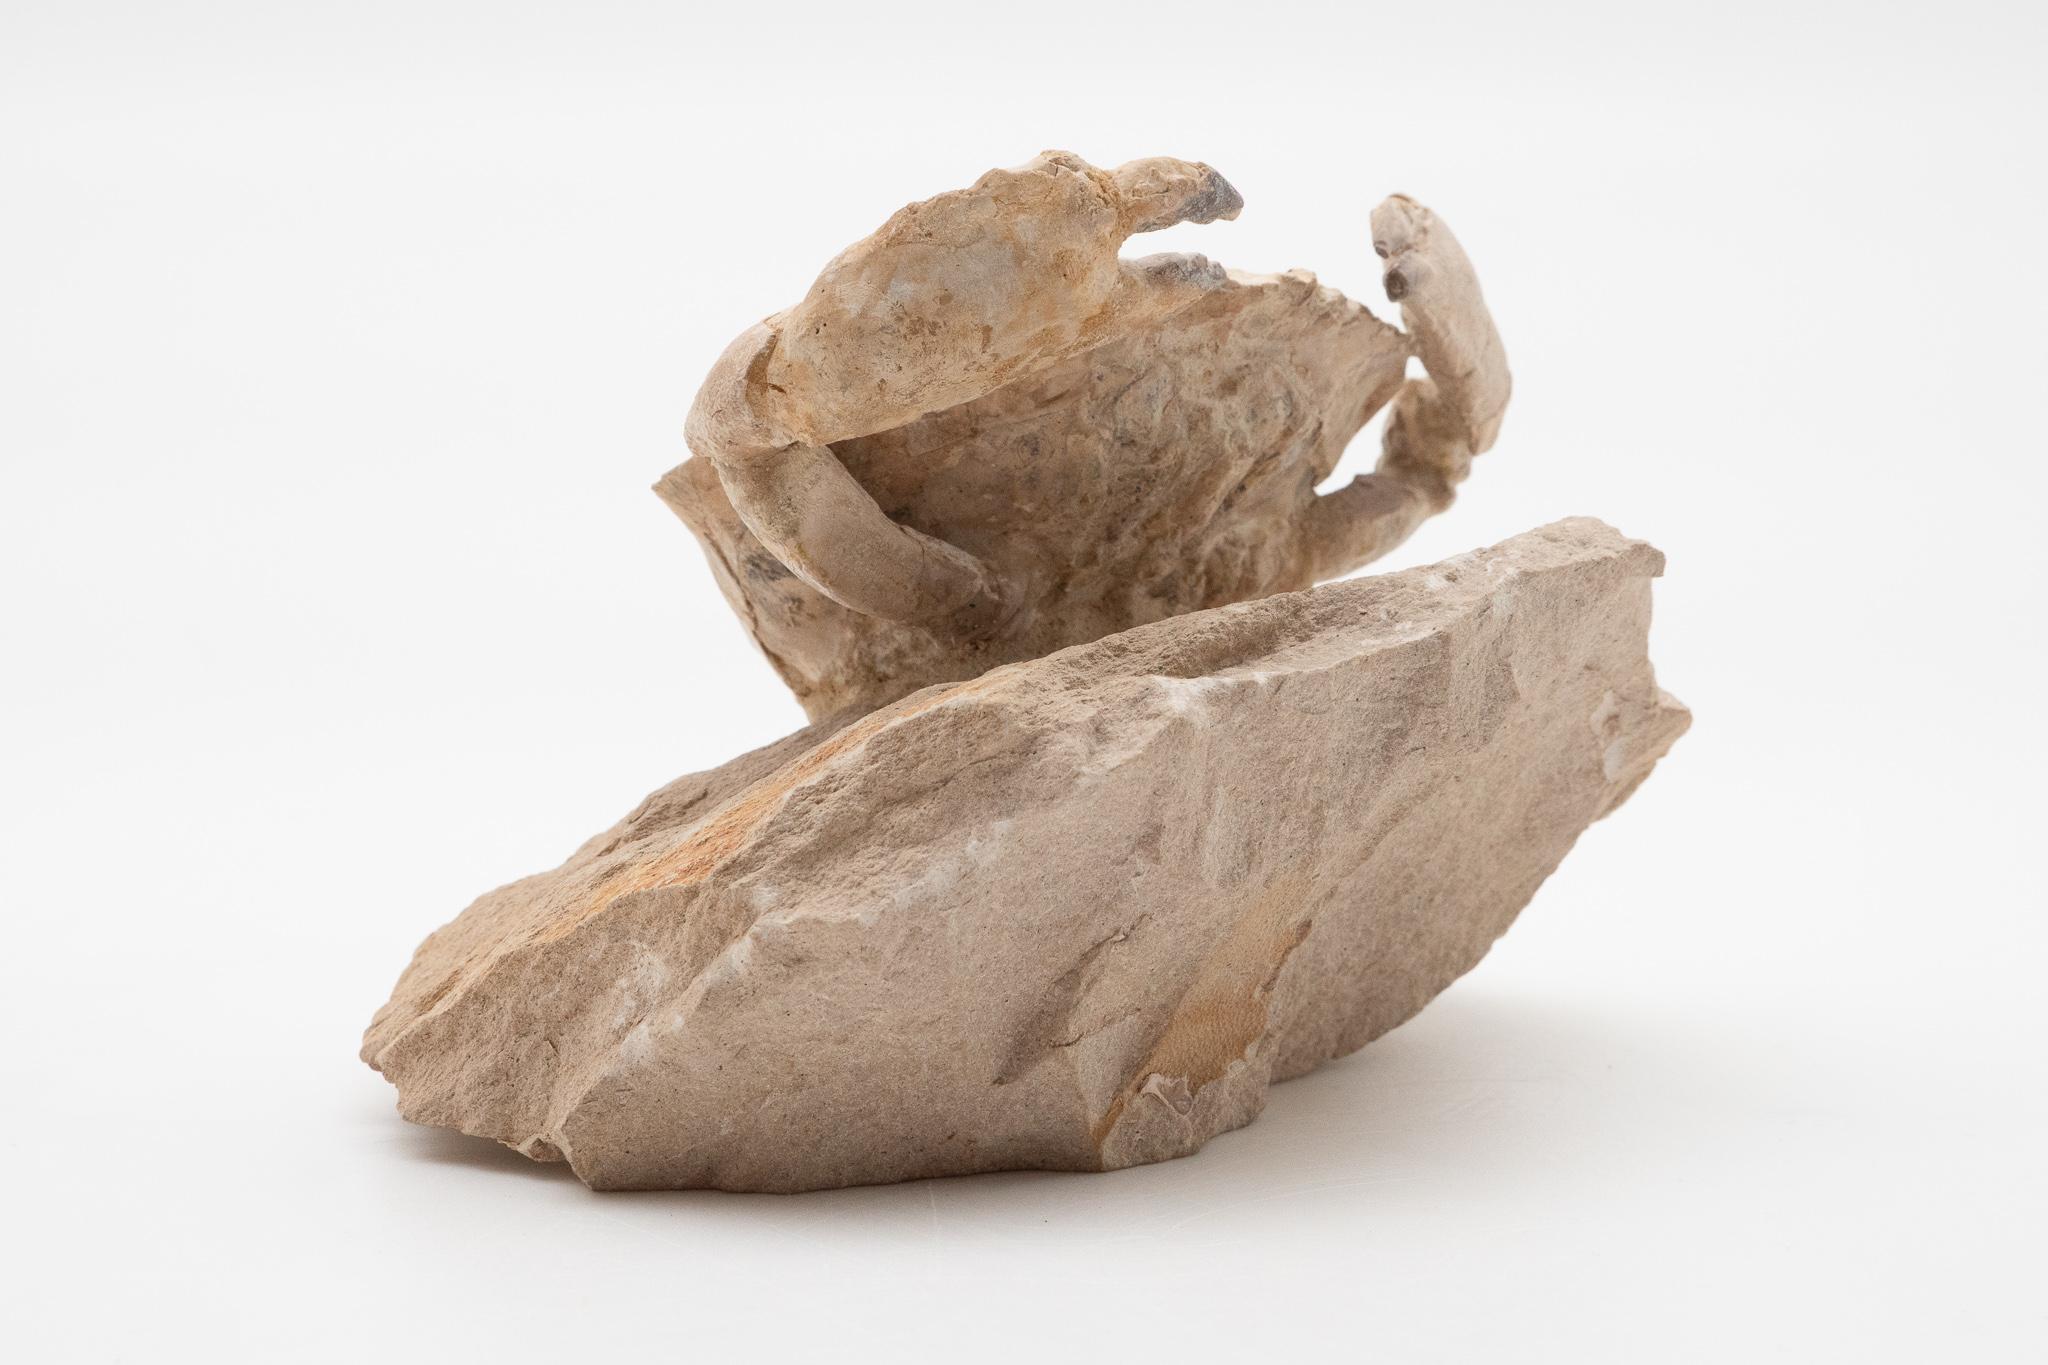 Prehistoric Fossilized Crab Specimen, Eocene Period, Italy